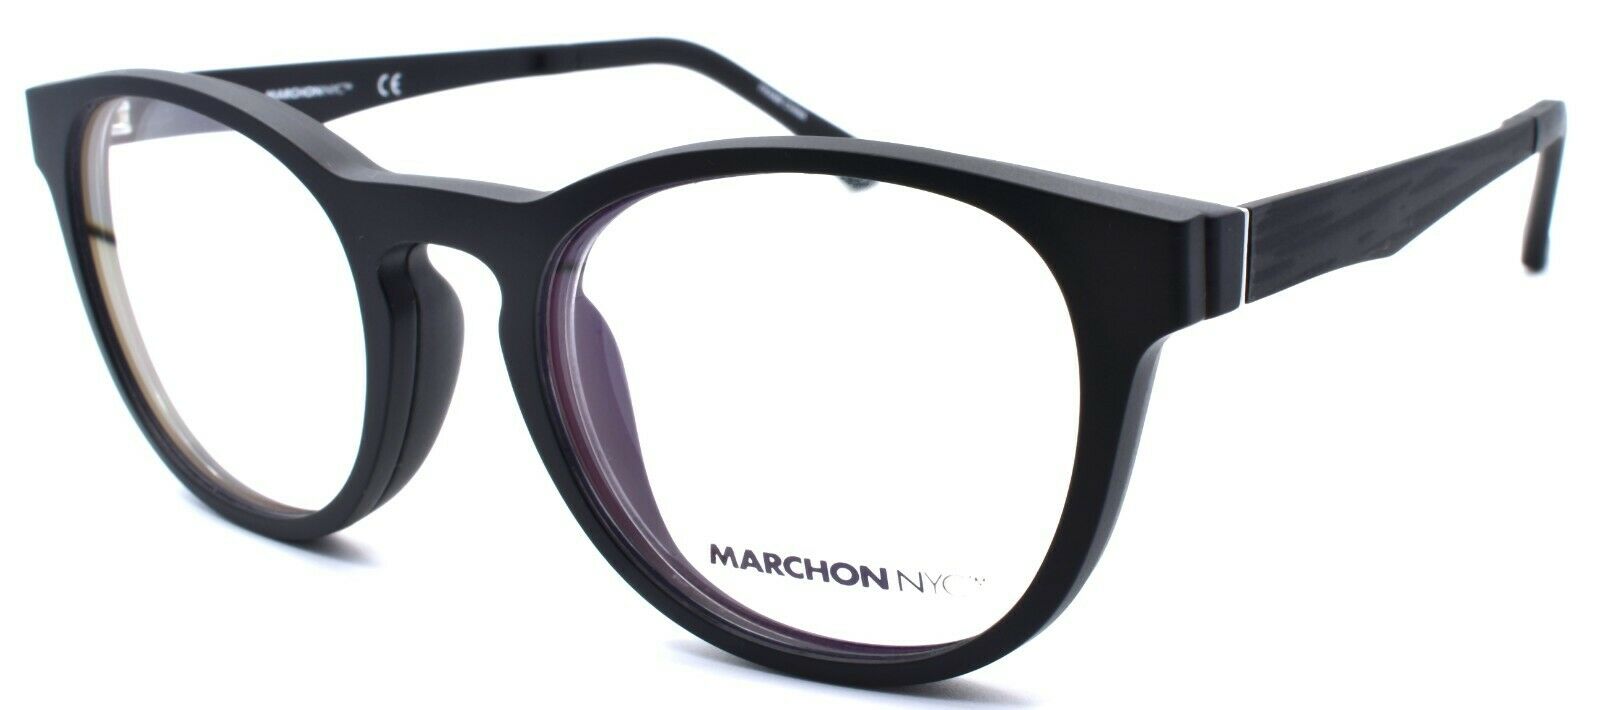 2-Marchon M-1502 002 Eyeglasses Frames 50-19-140 Matte Black + 2 Magnetic Clip Ons-886895484350-IKSpecs